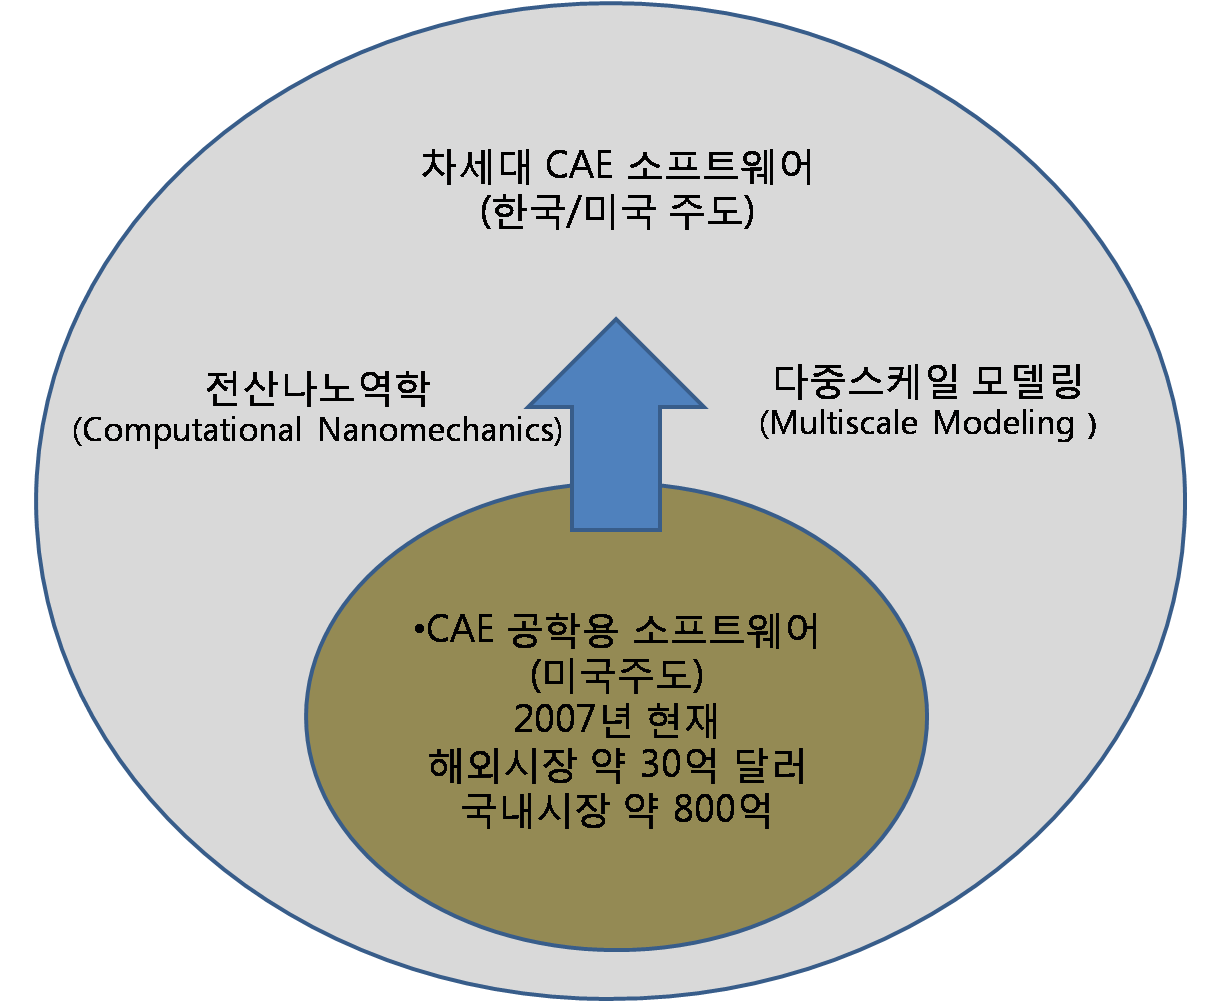 그림 8. 차세대 CAE 소프트웨어 시장의 발전도 및 한국의 위상